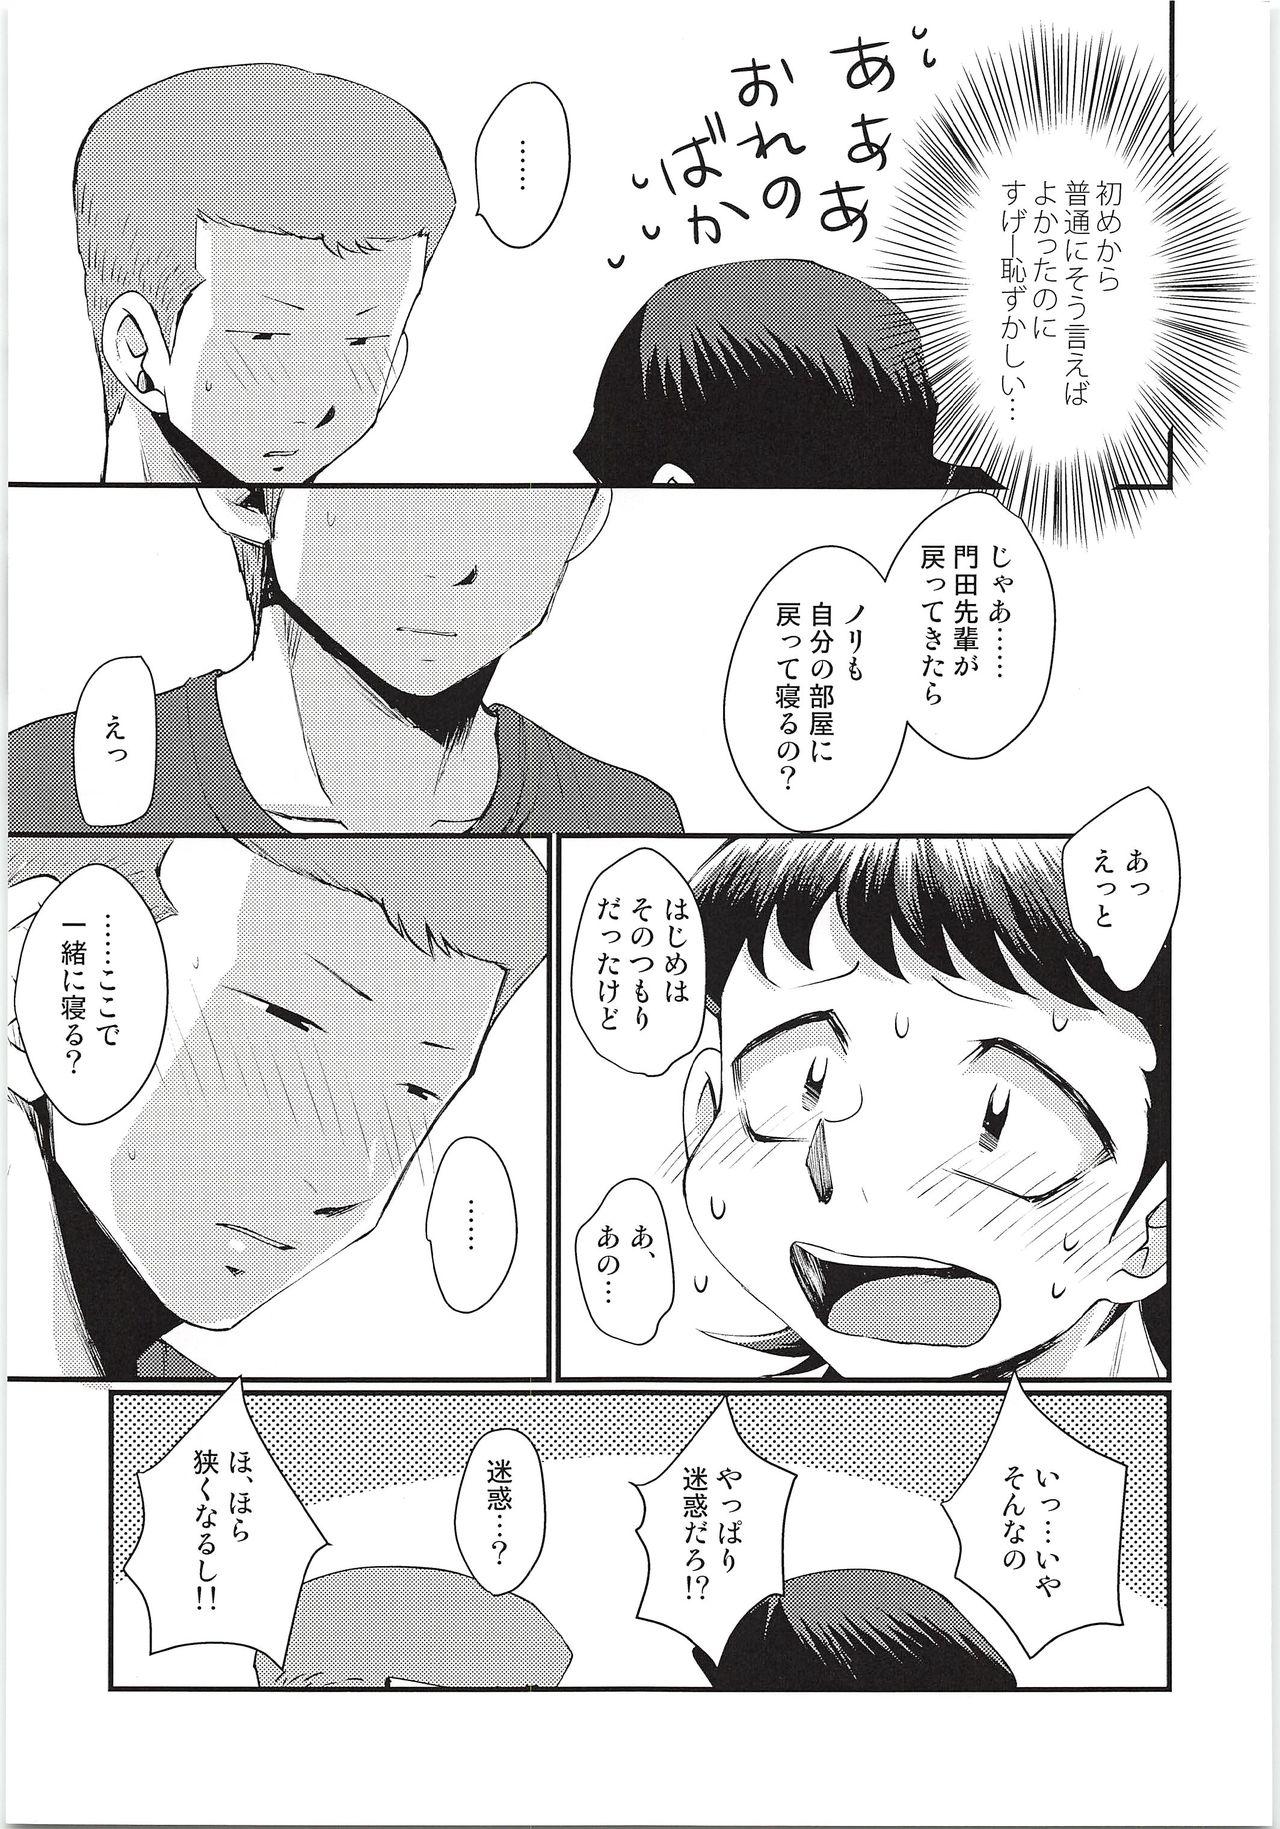 Three Some Hazukashikute Shinisou - Daiya no ace Closeups - Page 6